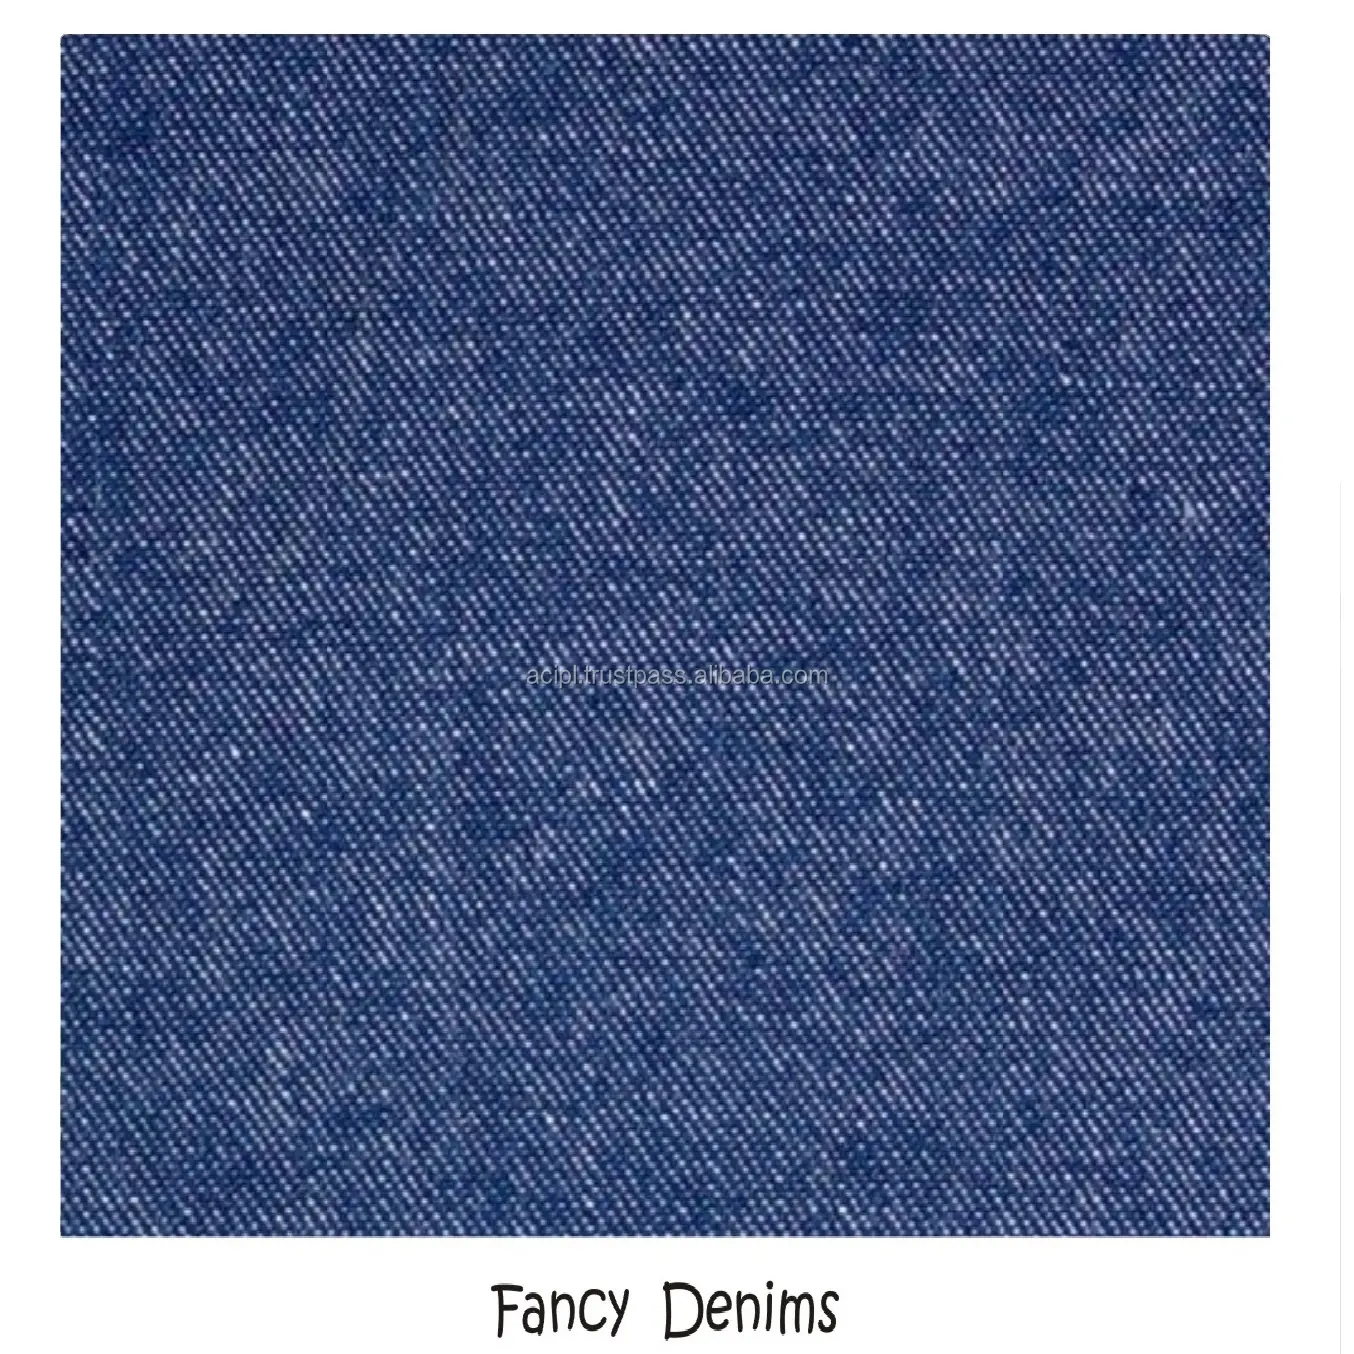 Tecido denim tecido de algodão poli qualidade do spandex 75/23/2 com 370 gsm largura 72 polegadas 12 oz alta qualidade para venda da índia